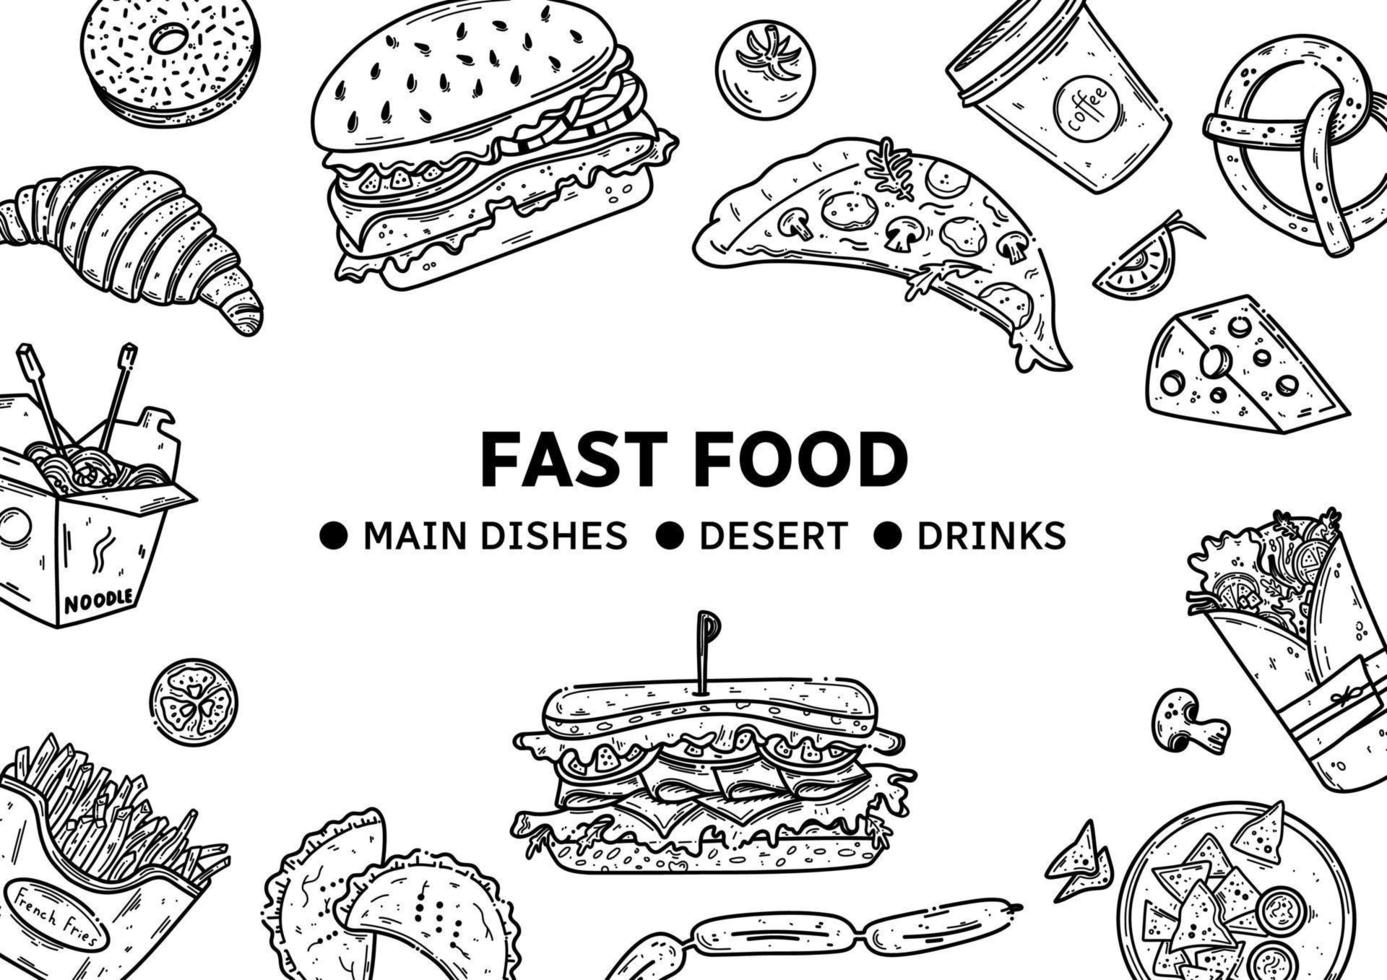 vetor de fast-food definir ilustração. junk food em estilo doodle. coleção desenhada à mão de fast food